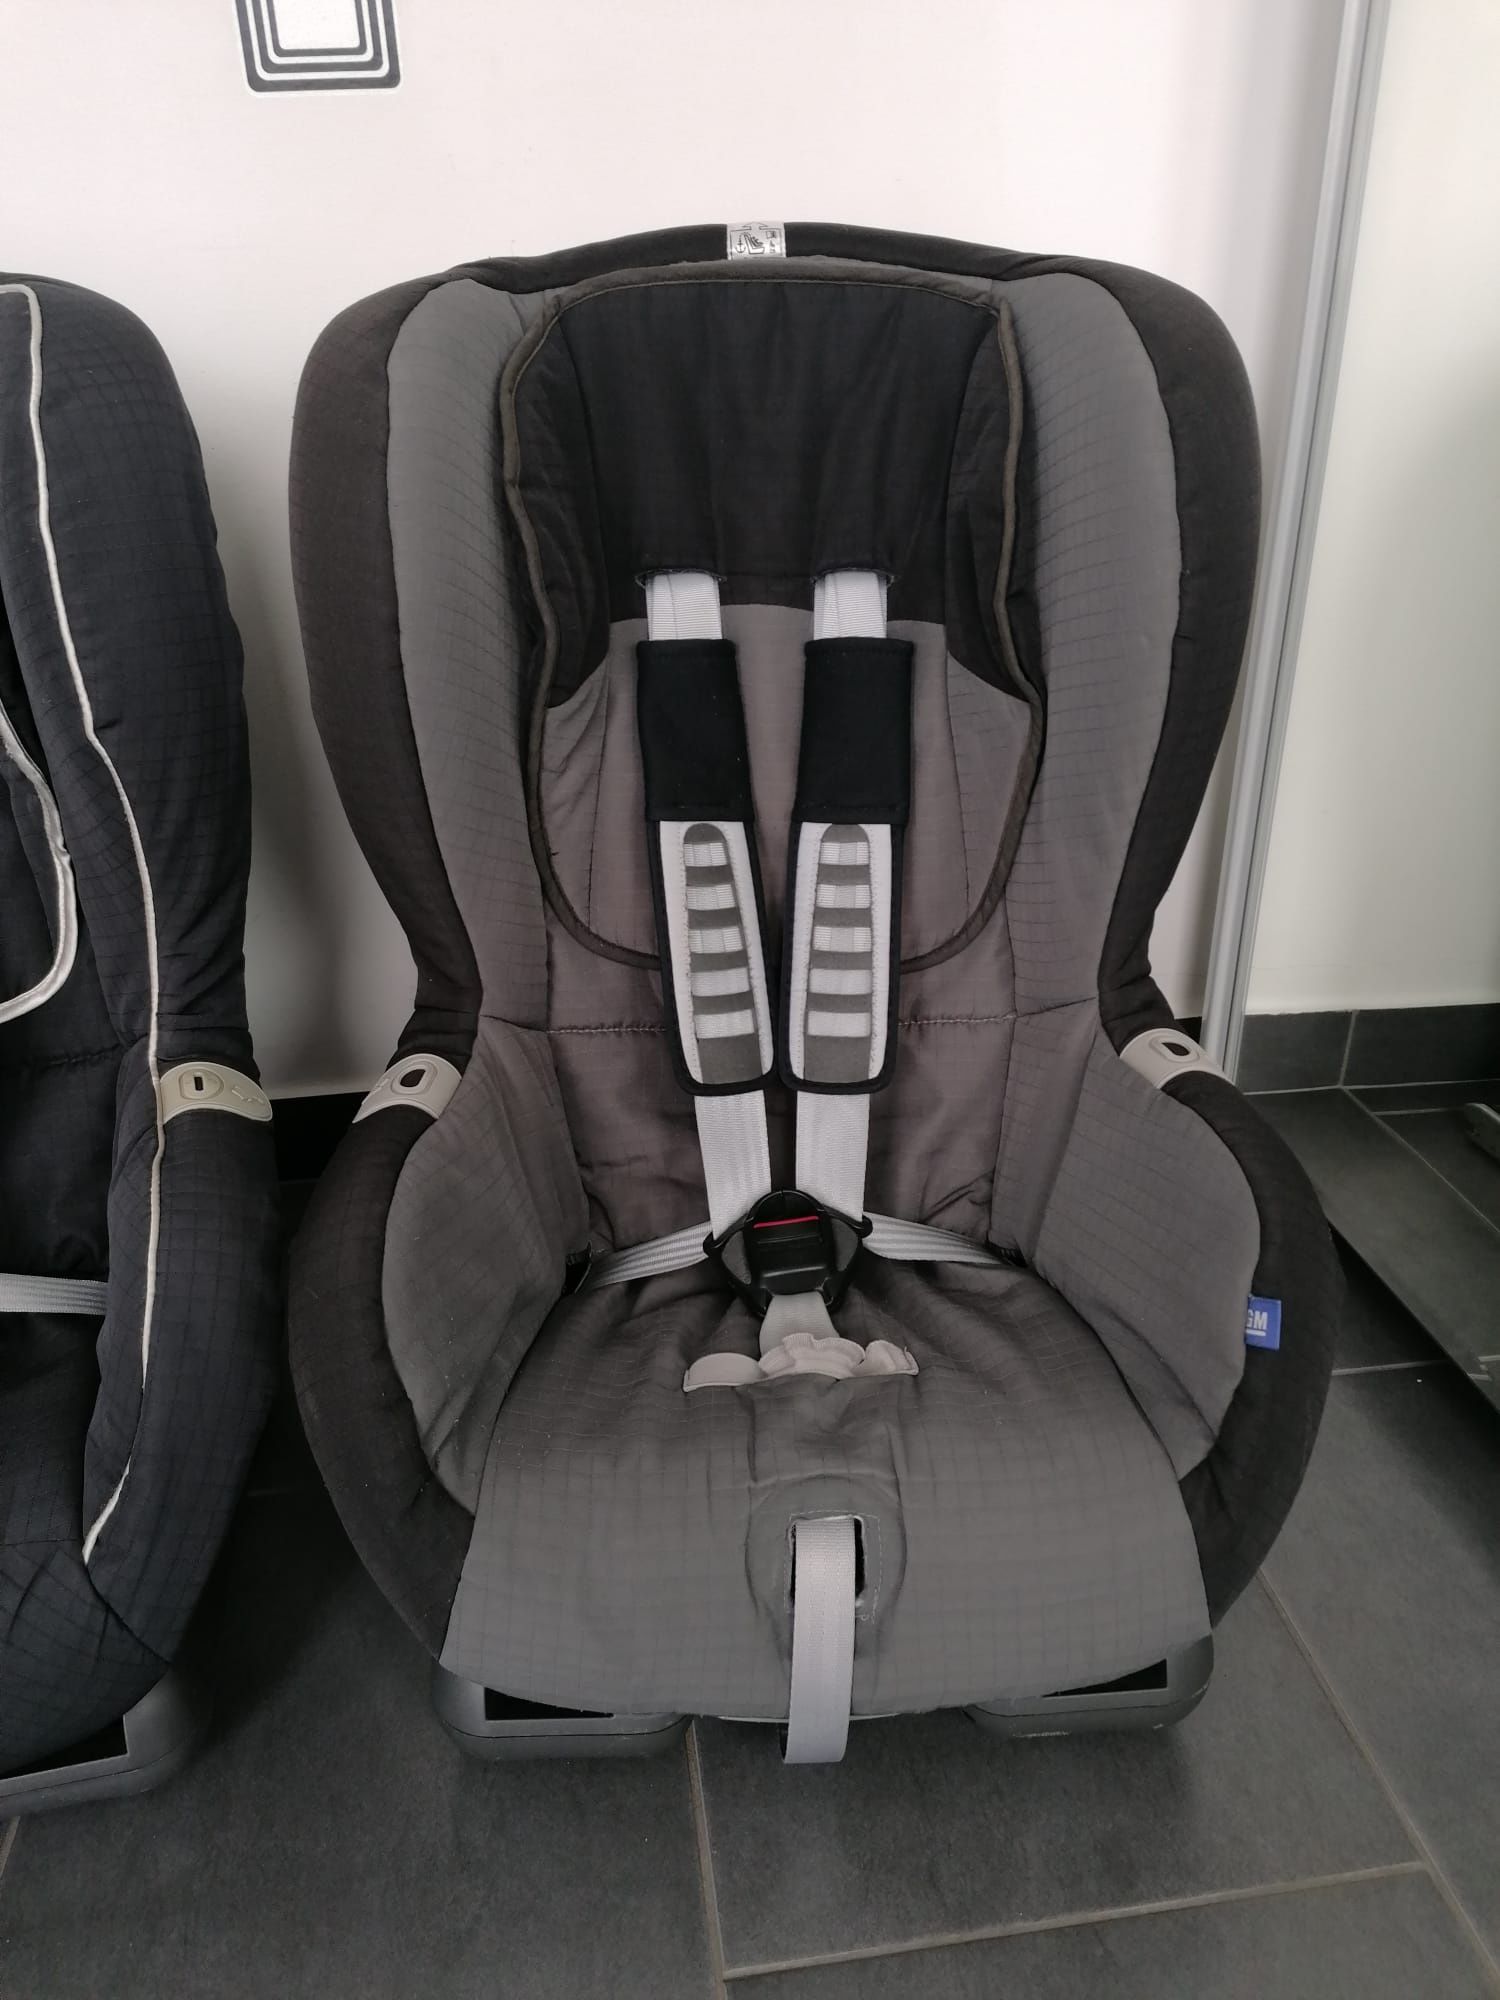 Scaun auto Britax Romer Duo Plus cu isofix pentru copii intre 9-18 kg